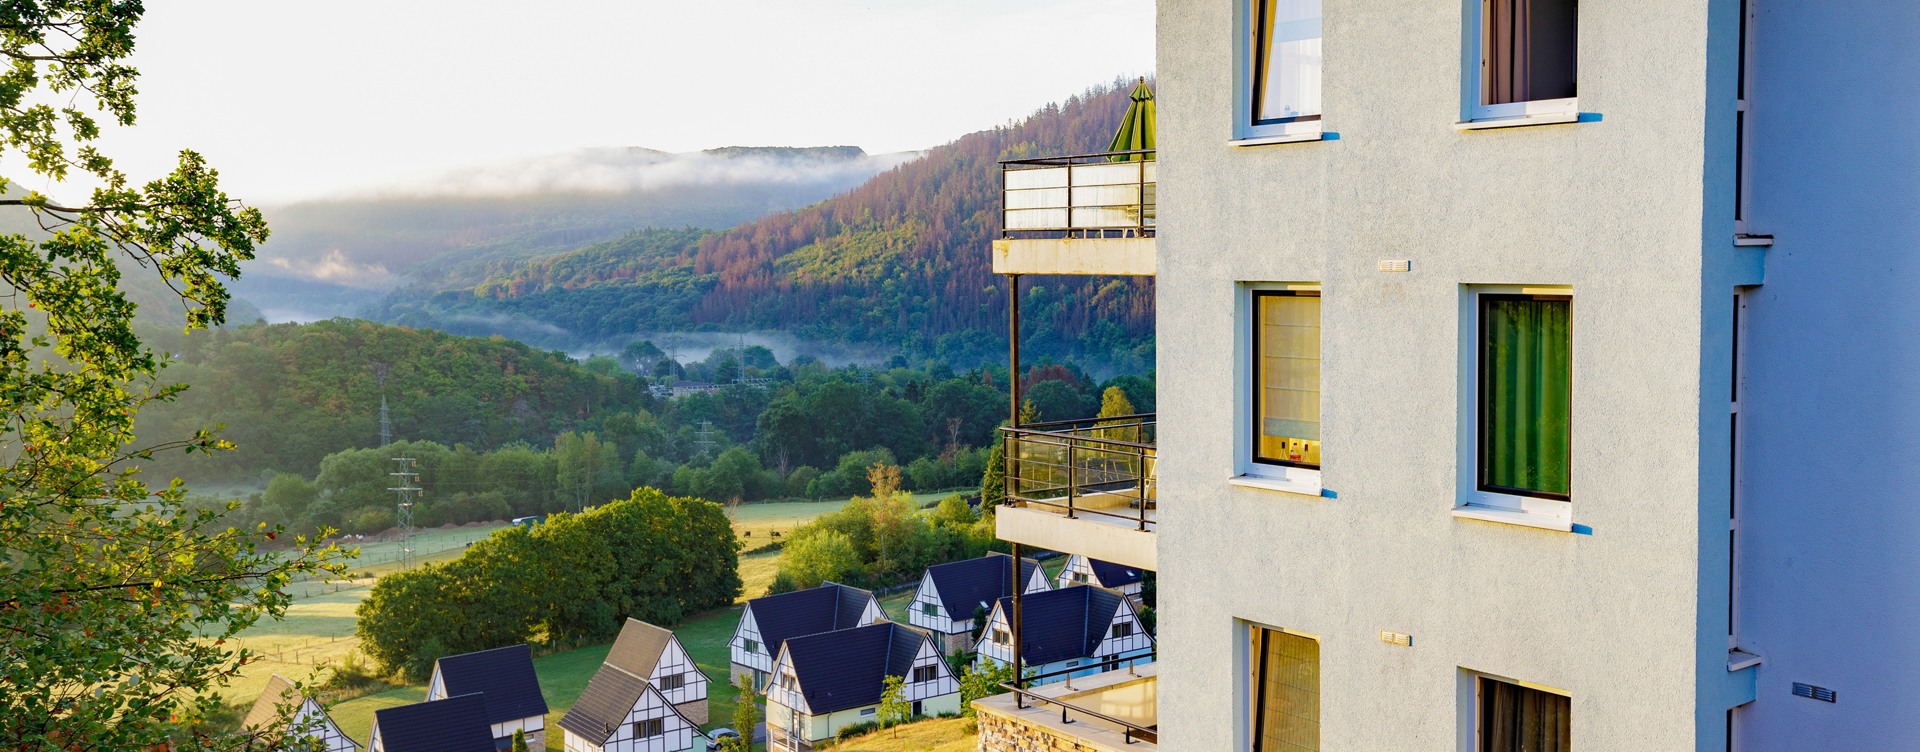 Het leukste vakantiepark in de Eifel:
Dormio Resort Eifeler Tor